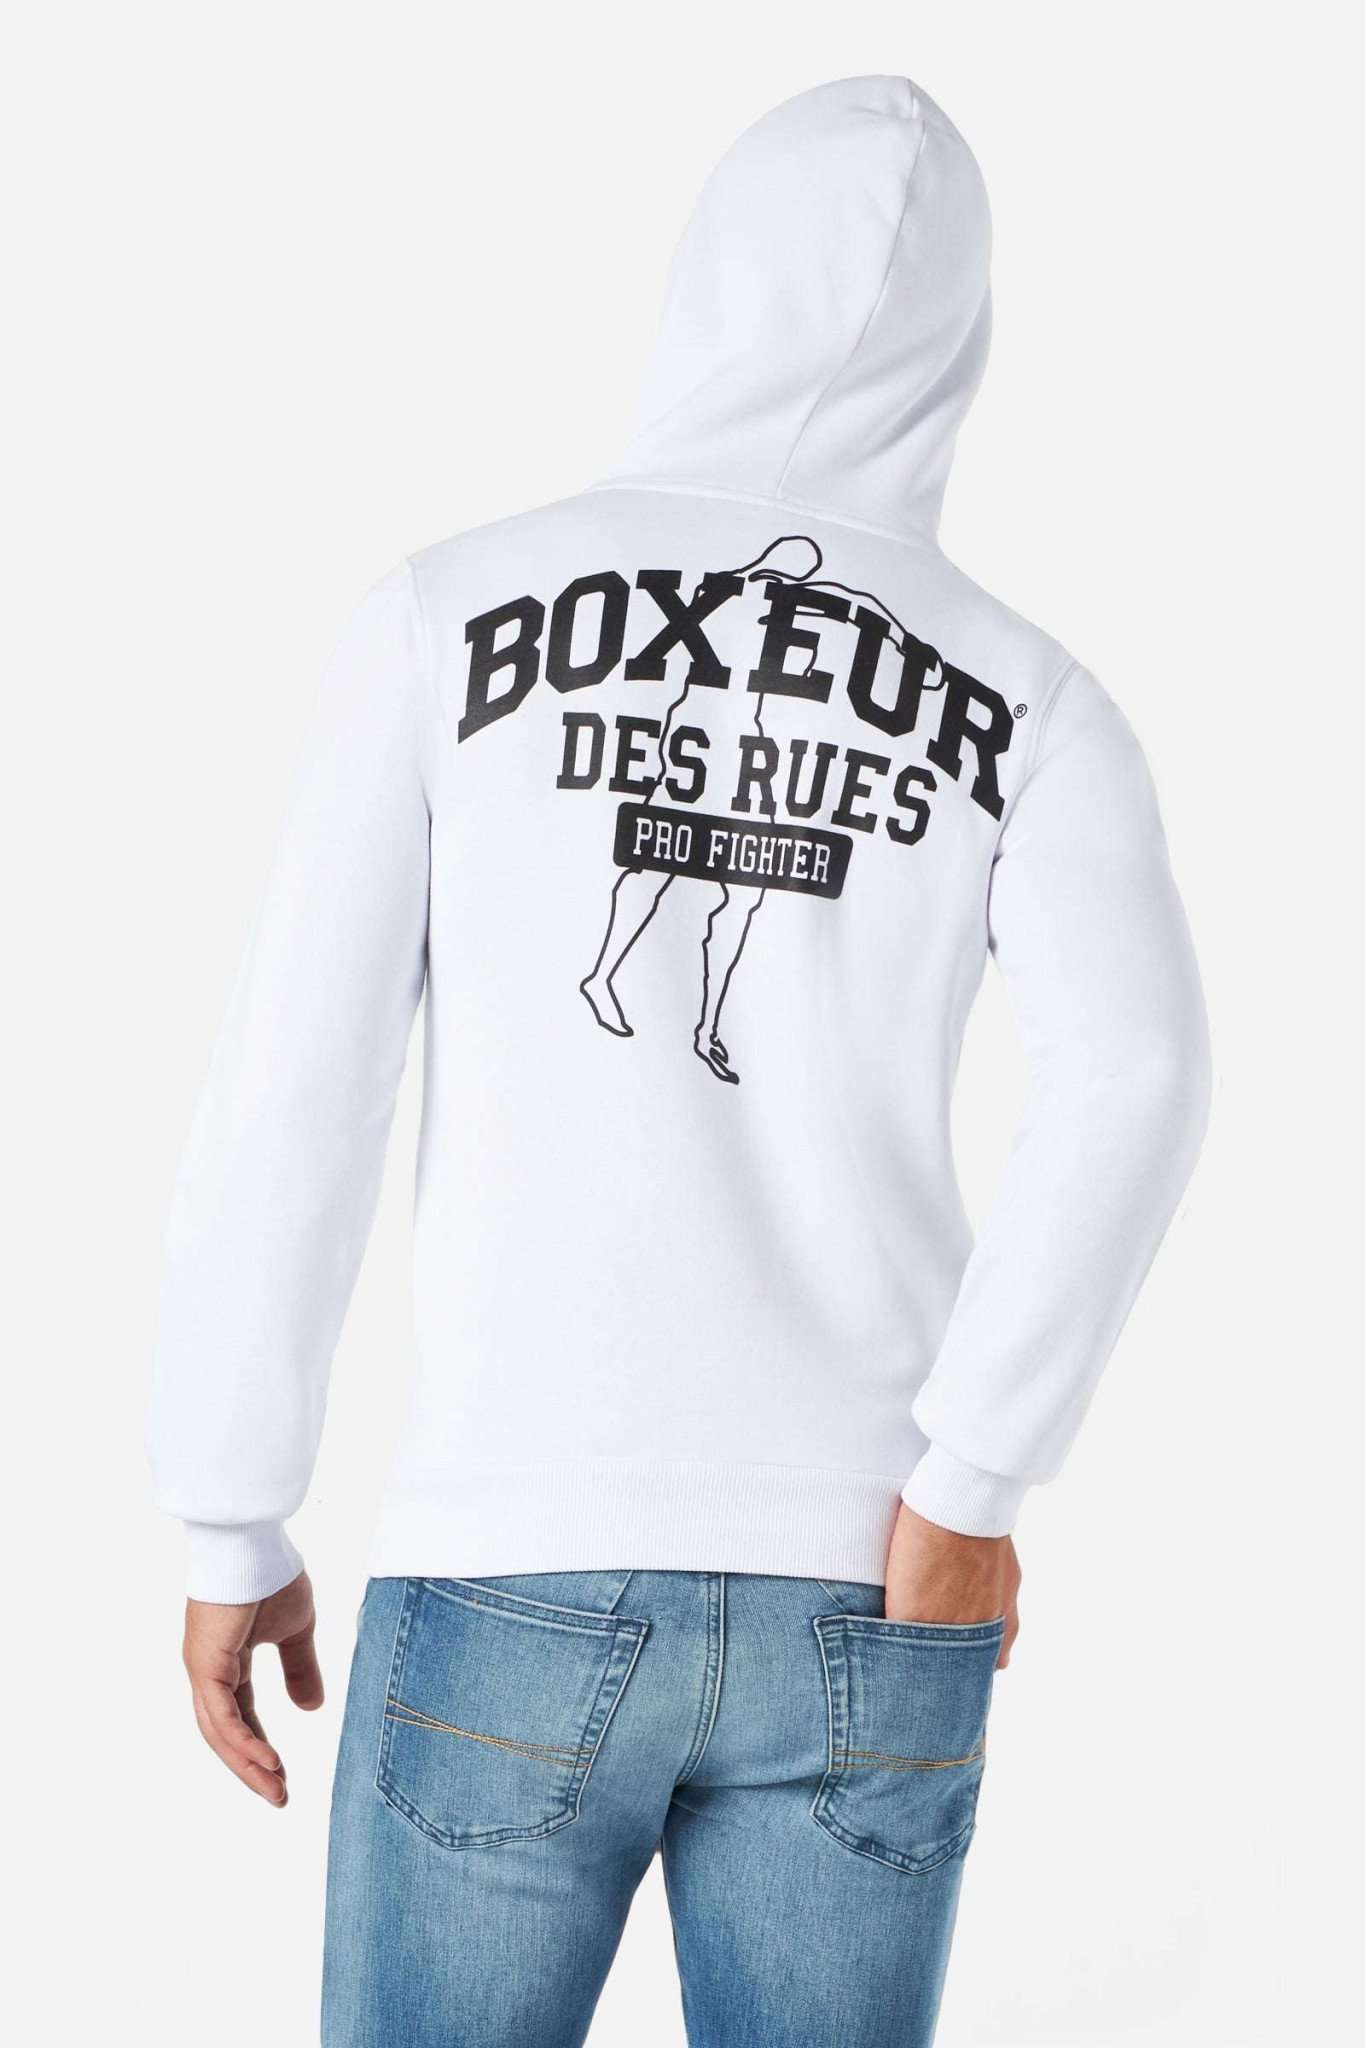 Man Hoodie Sweatshirt in Whiteblack Kapuzenpullover Boxeur des Rues   